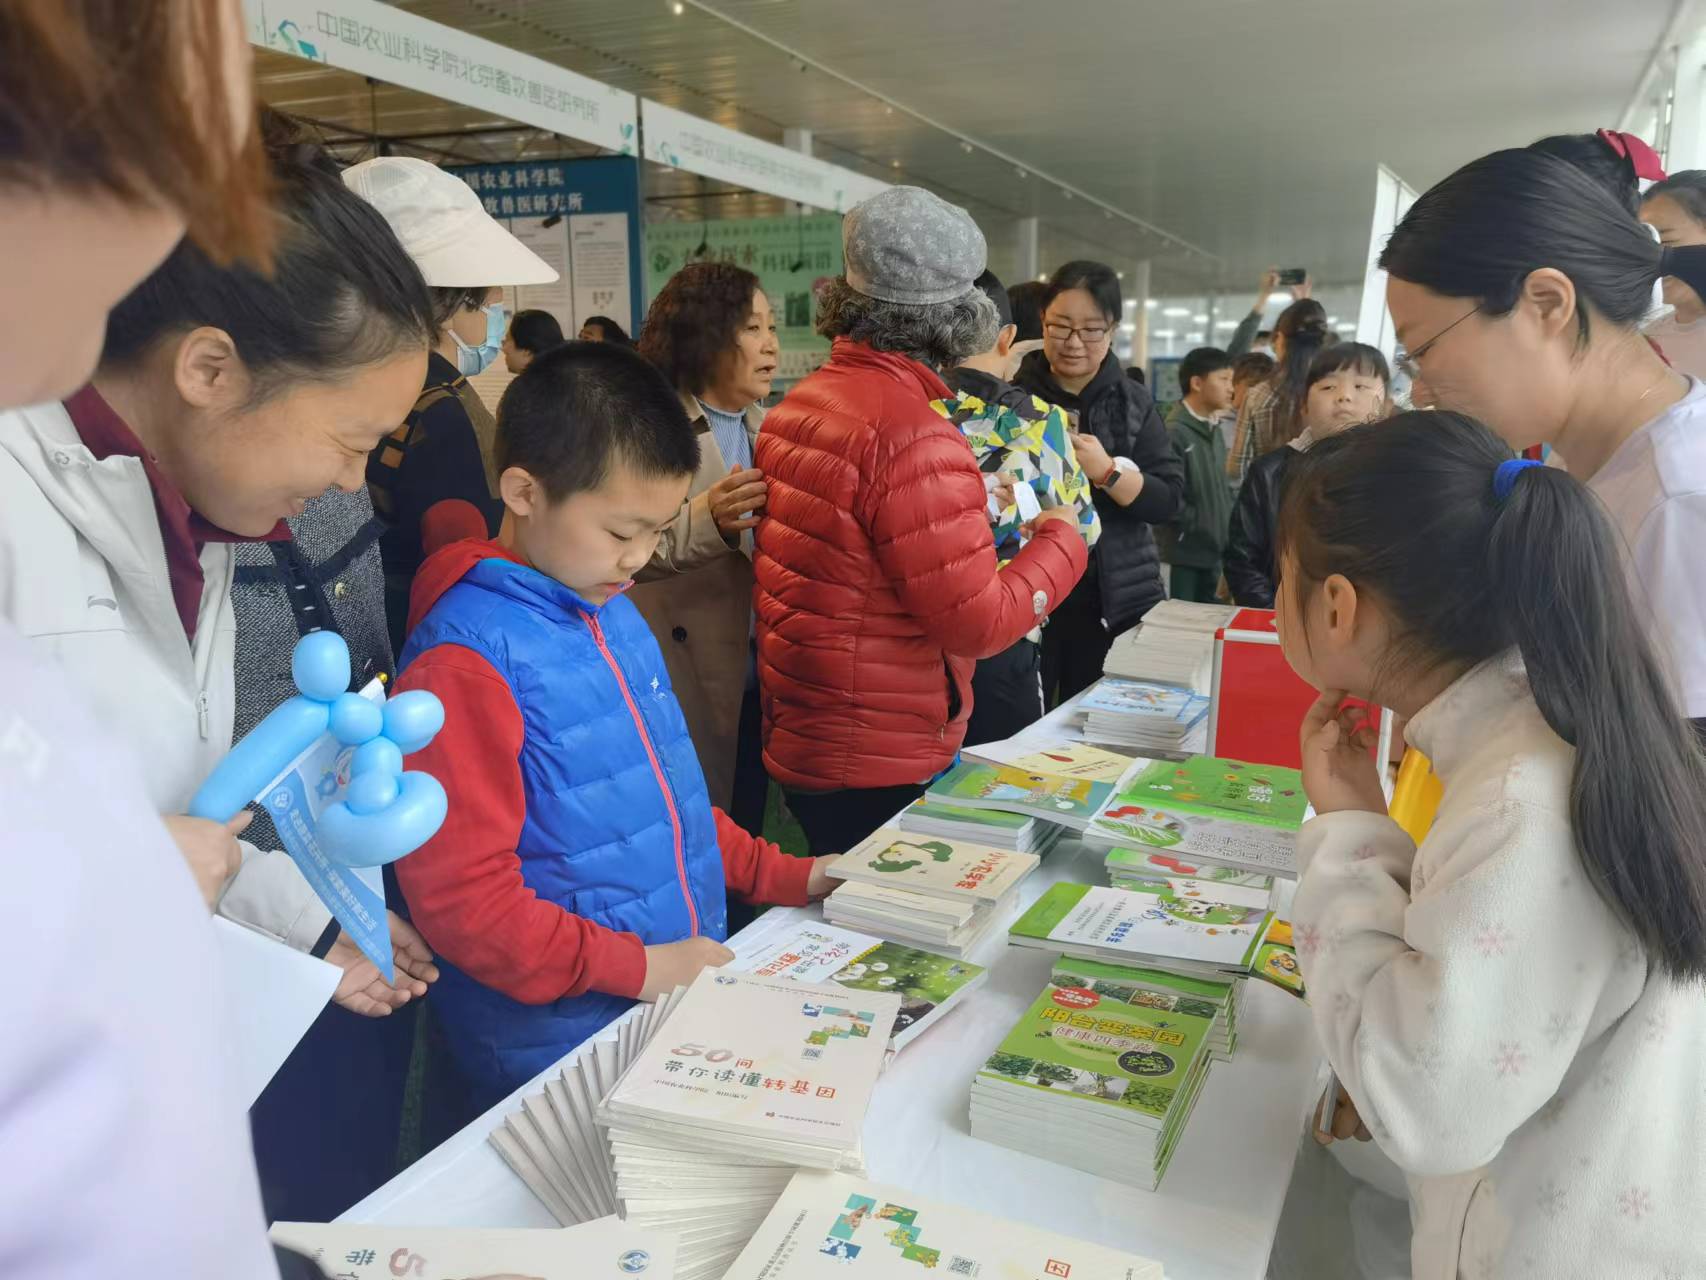 中国农业科学院第五届农科开放日活动上，现场发放的科普书籍。新京报记者 周怀宗 摄